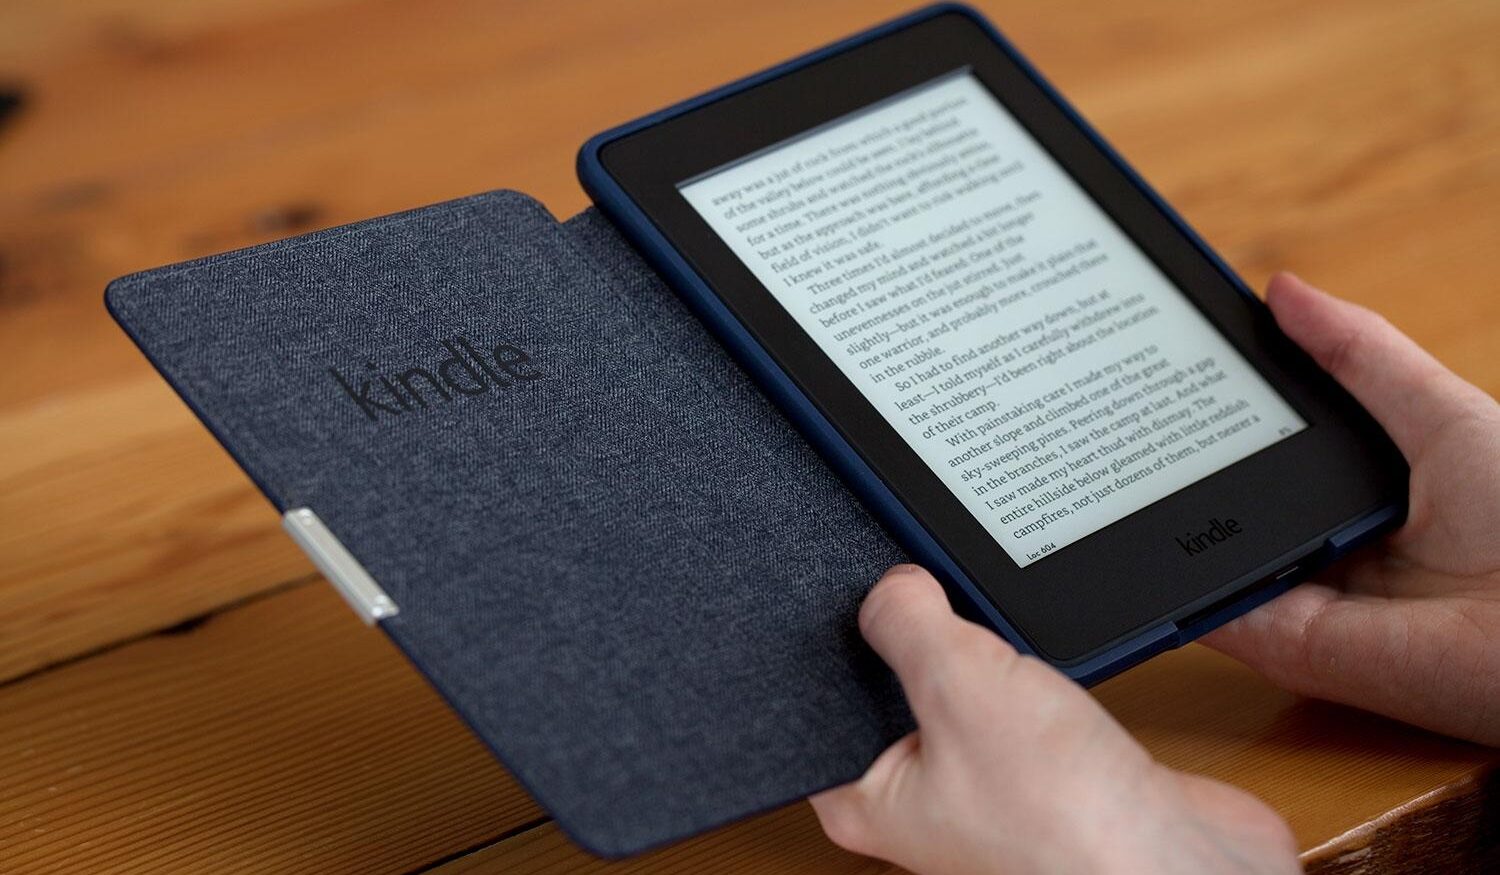 Come scegliere il Kindle? Le differenze tra i vari modelli